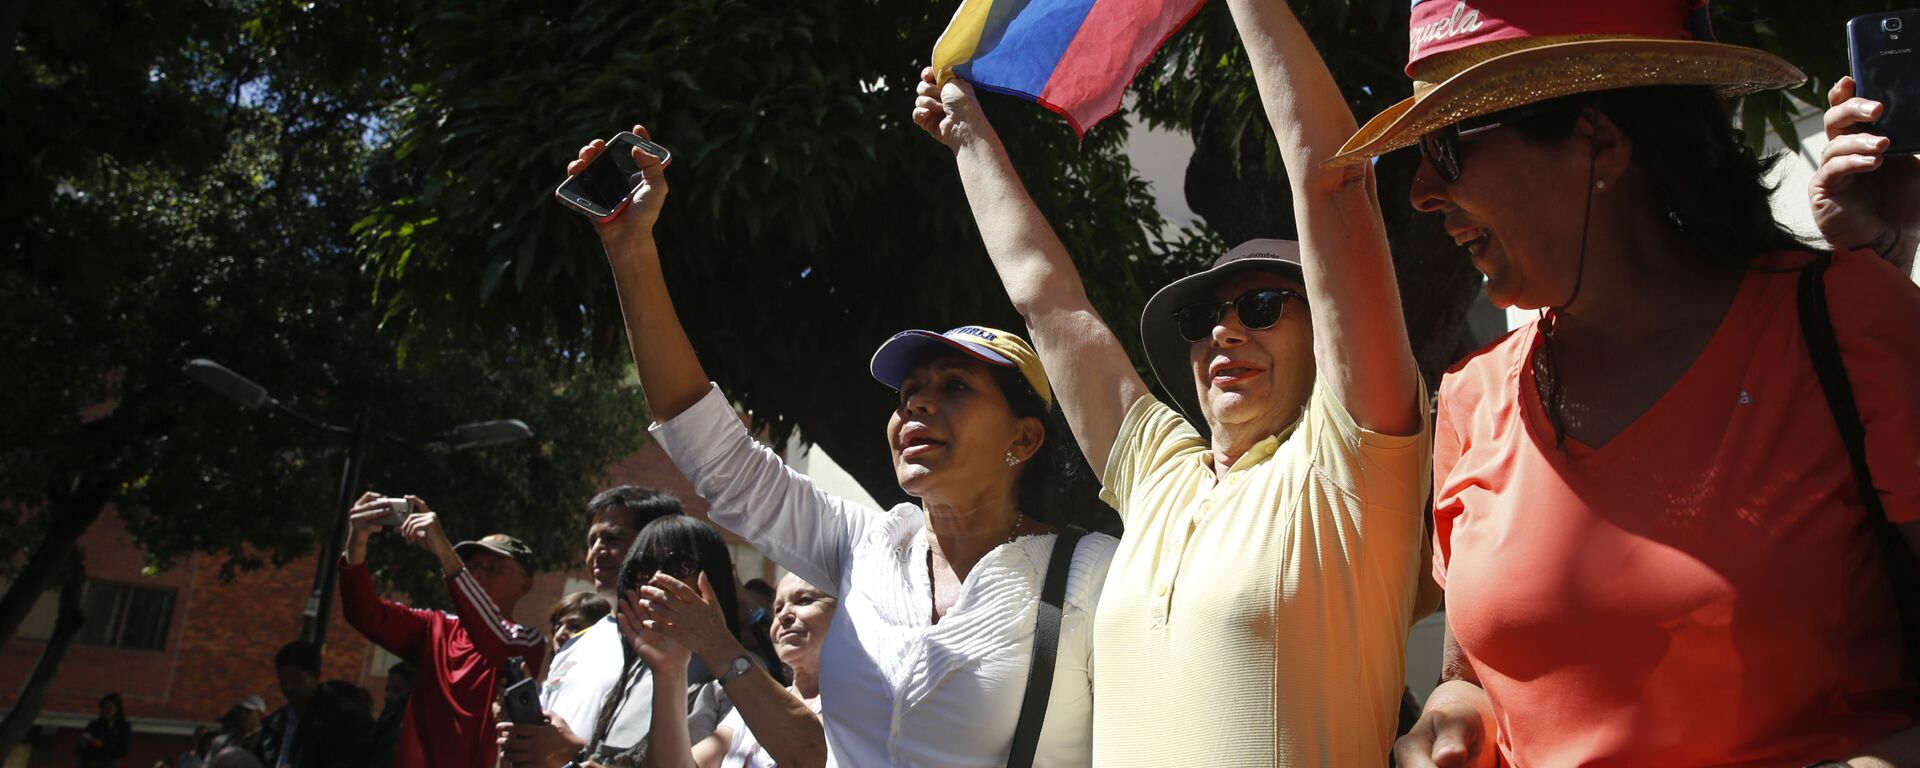 Лидер оппозиции Венесуэлы Хуан Гуаидо выступил на митинге в Каракасе  - Sputnik Latvija, 1920, 29.01.2019